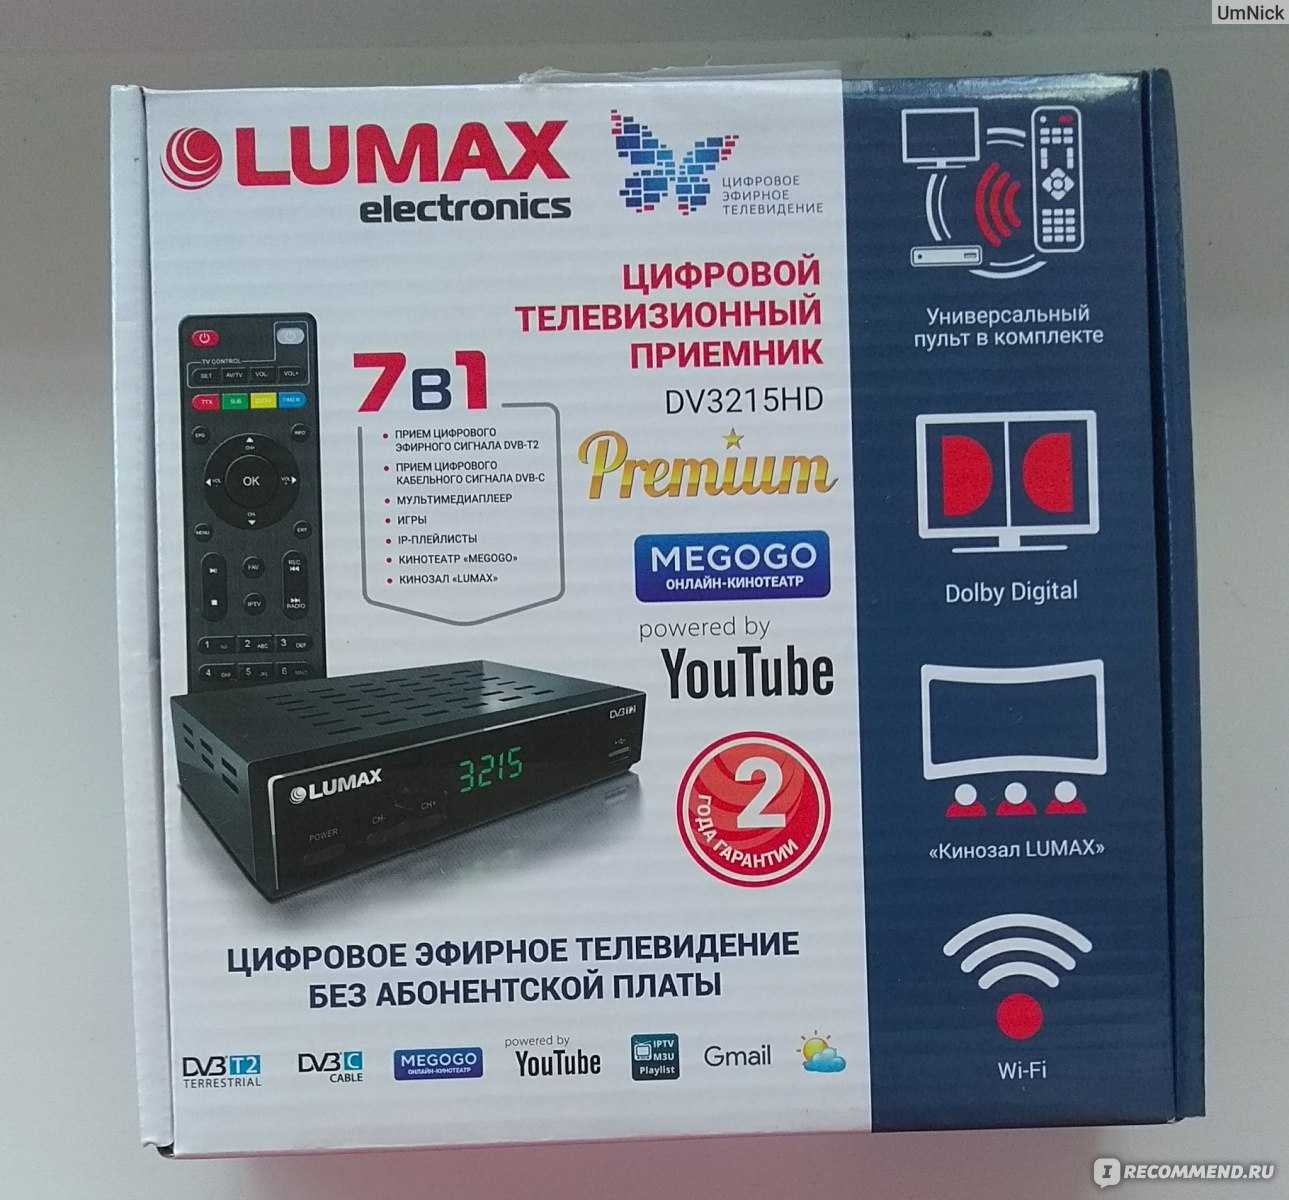 Как подключить и настроить приставку lumax к телевизору: пошаговая инструкция